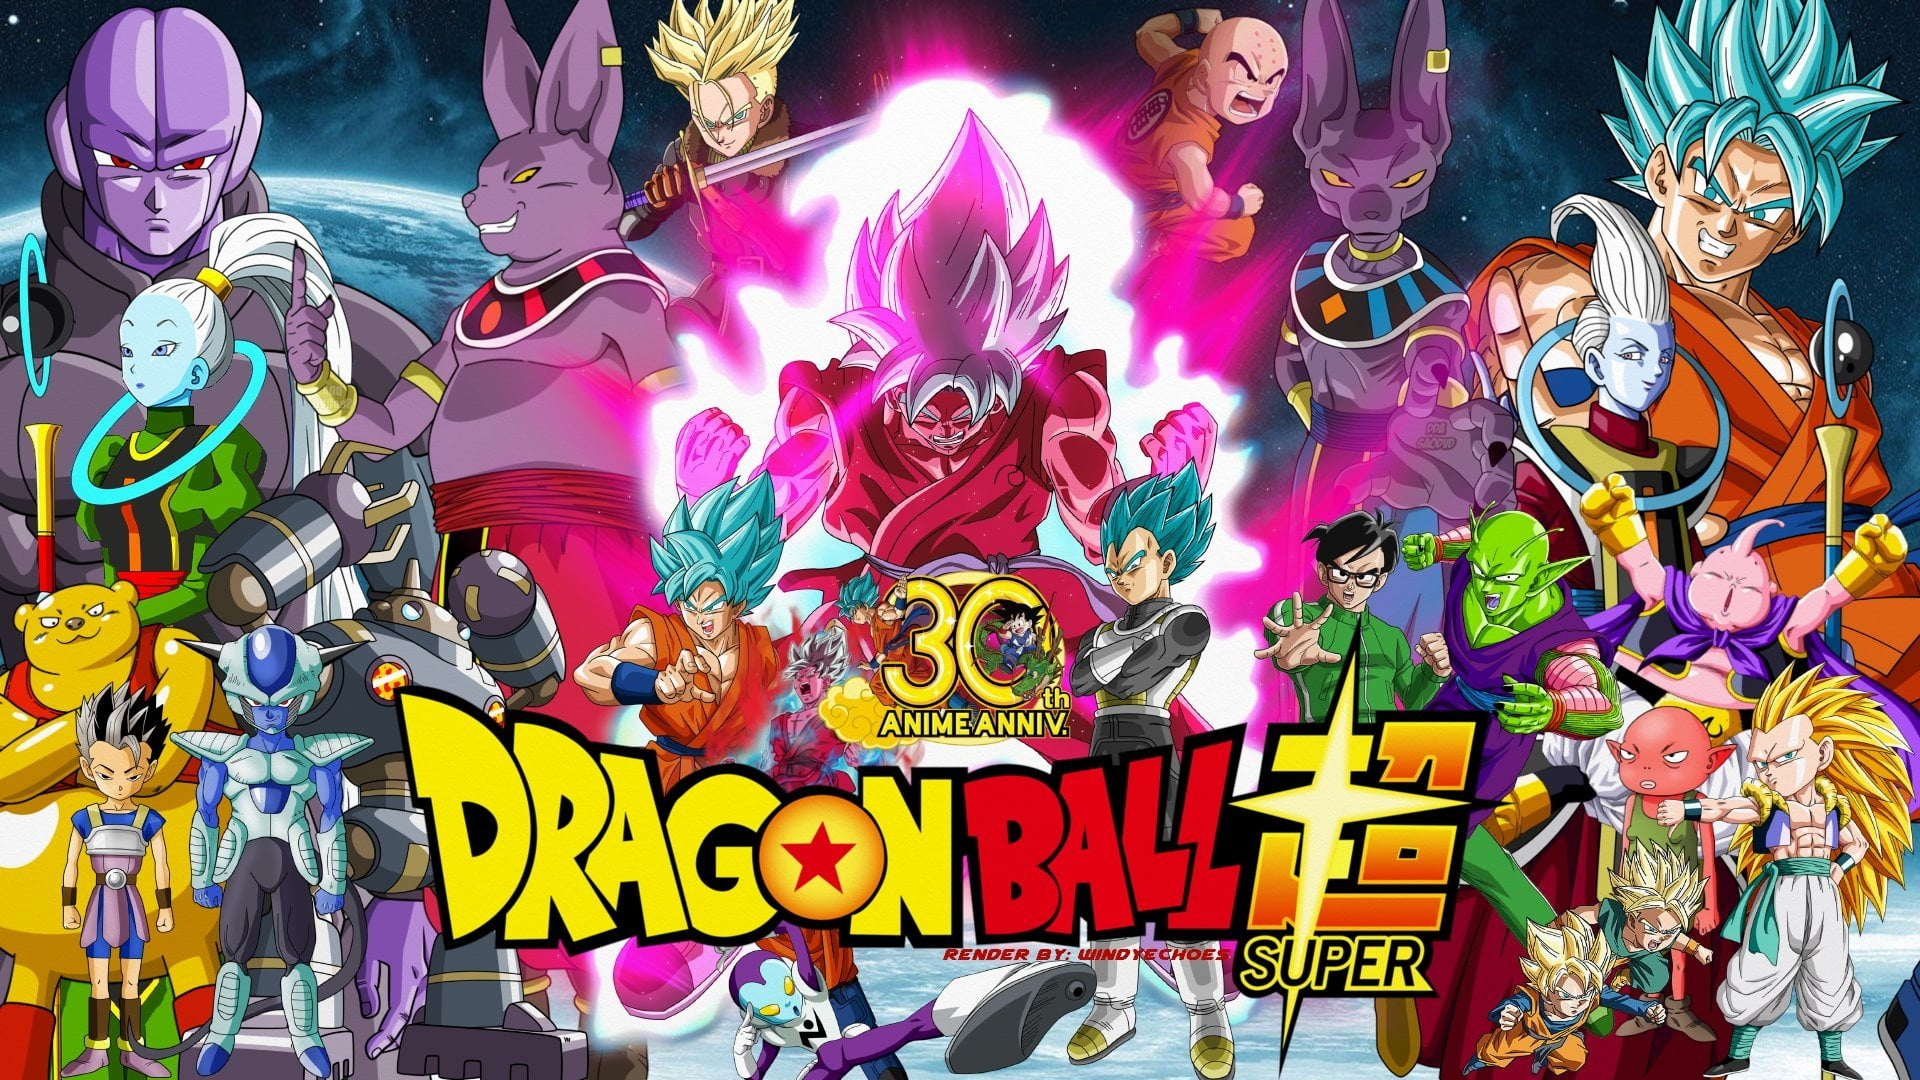 Dragon Ball, Dragon Ball Super, Beerus (Dragon Ball), Botamo (Dragon Ball)